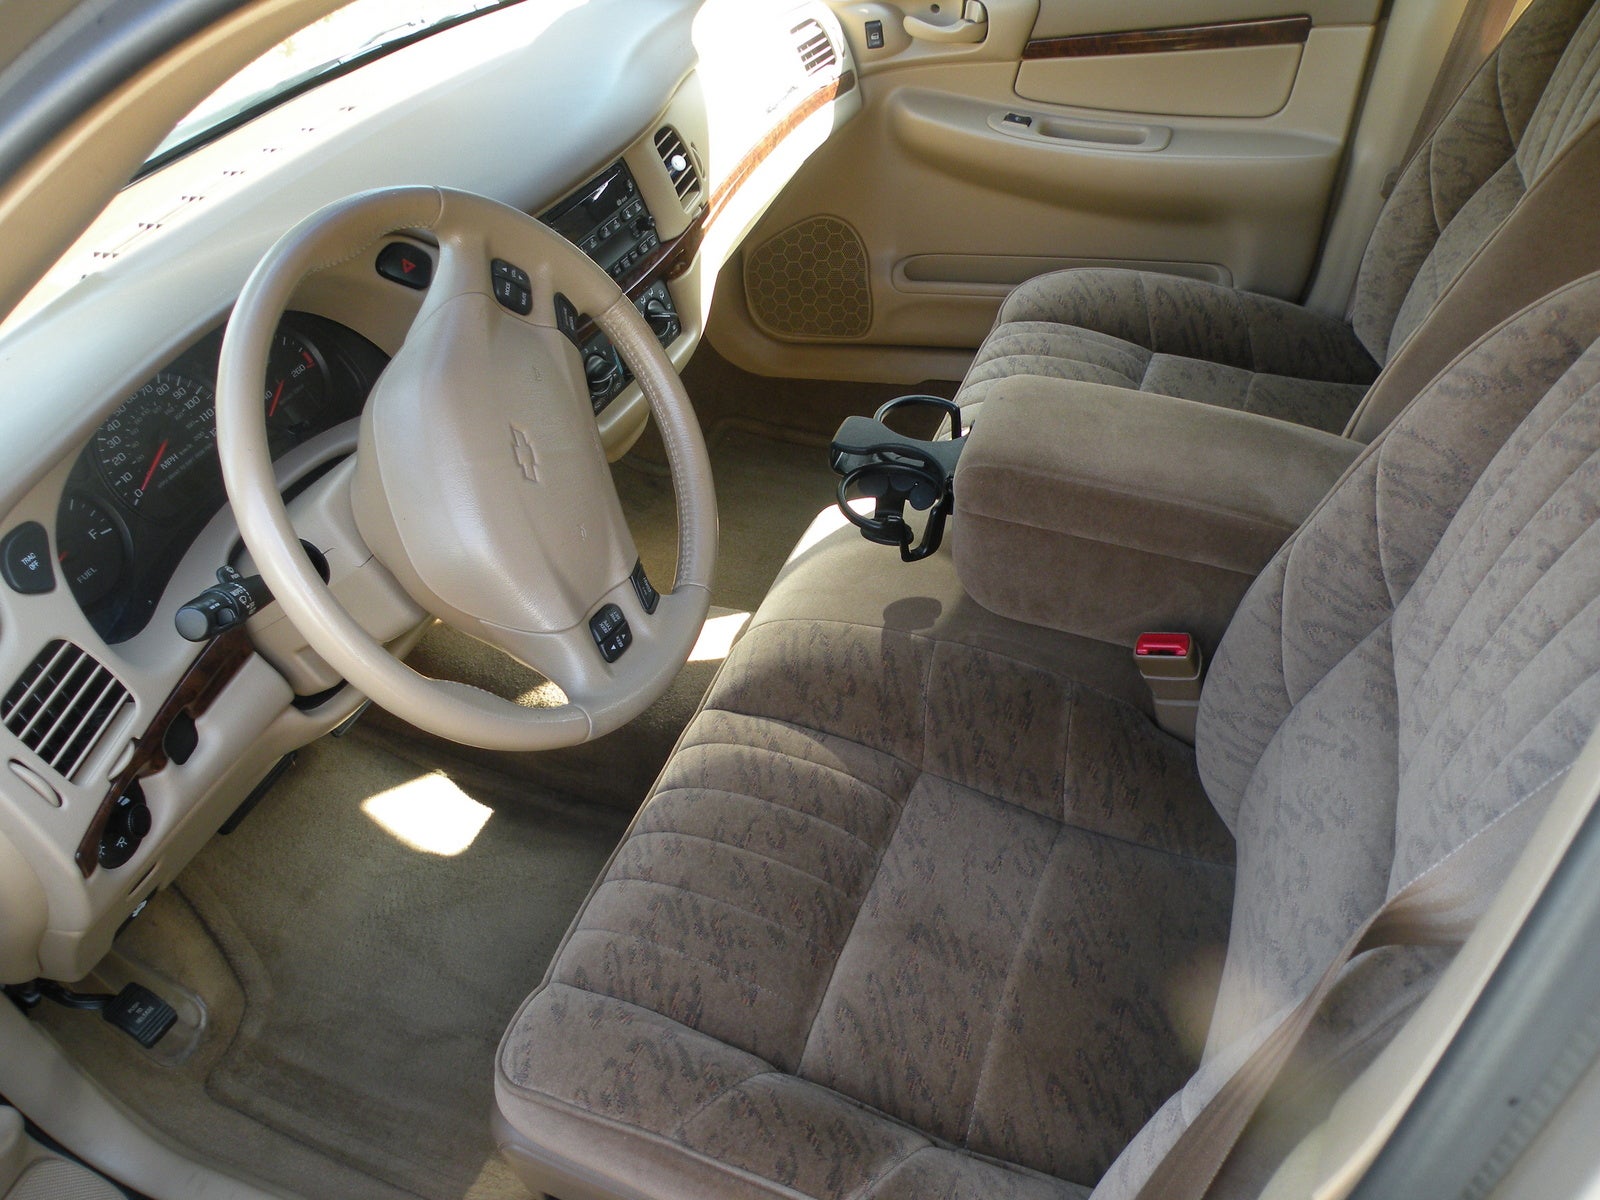 Chevy impala 2001 interior